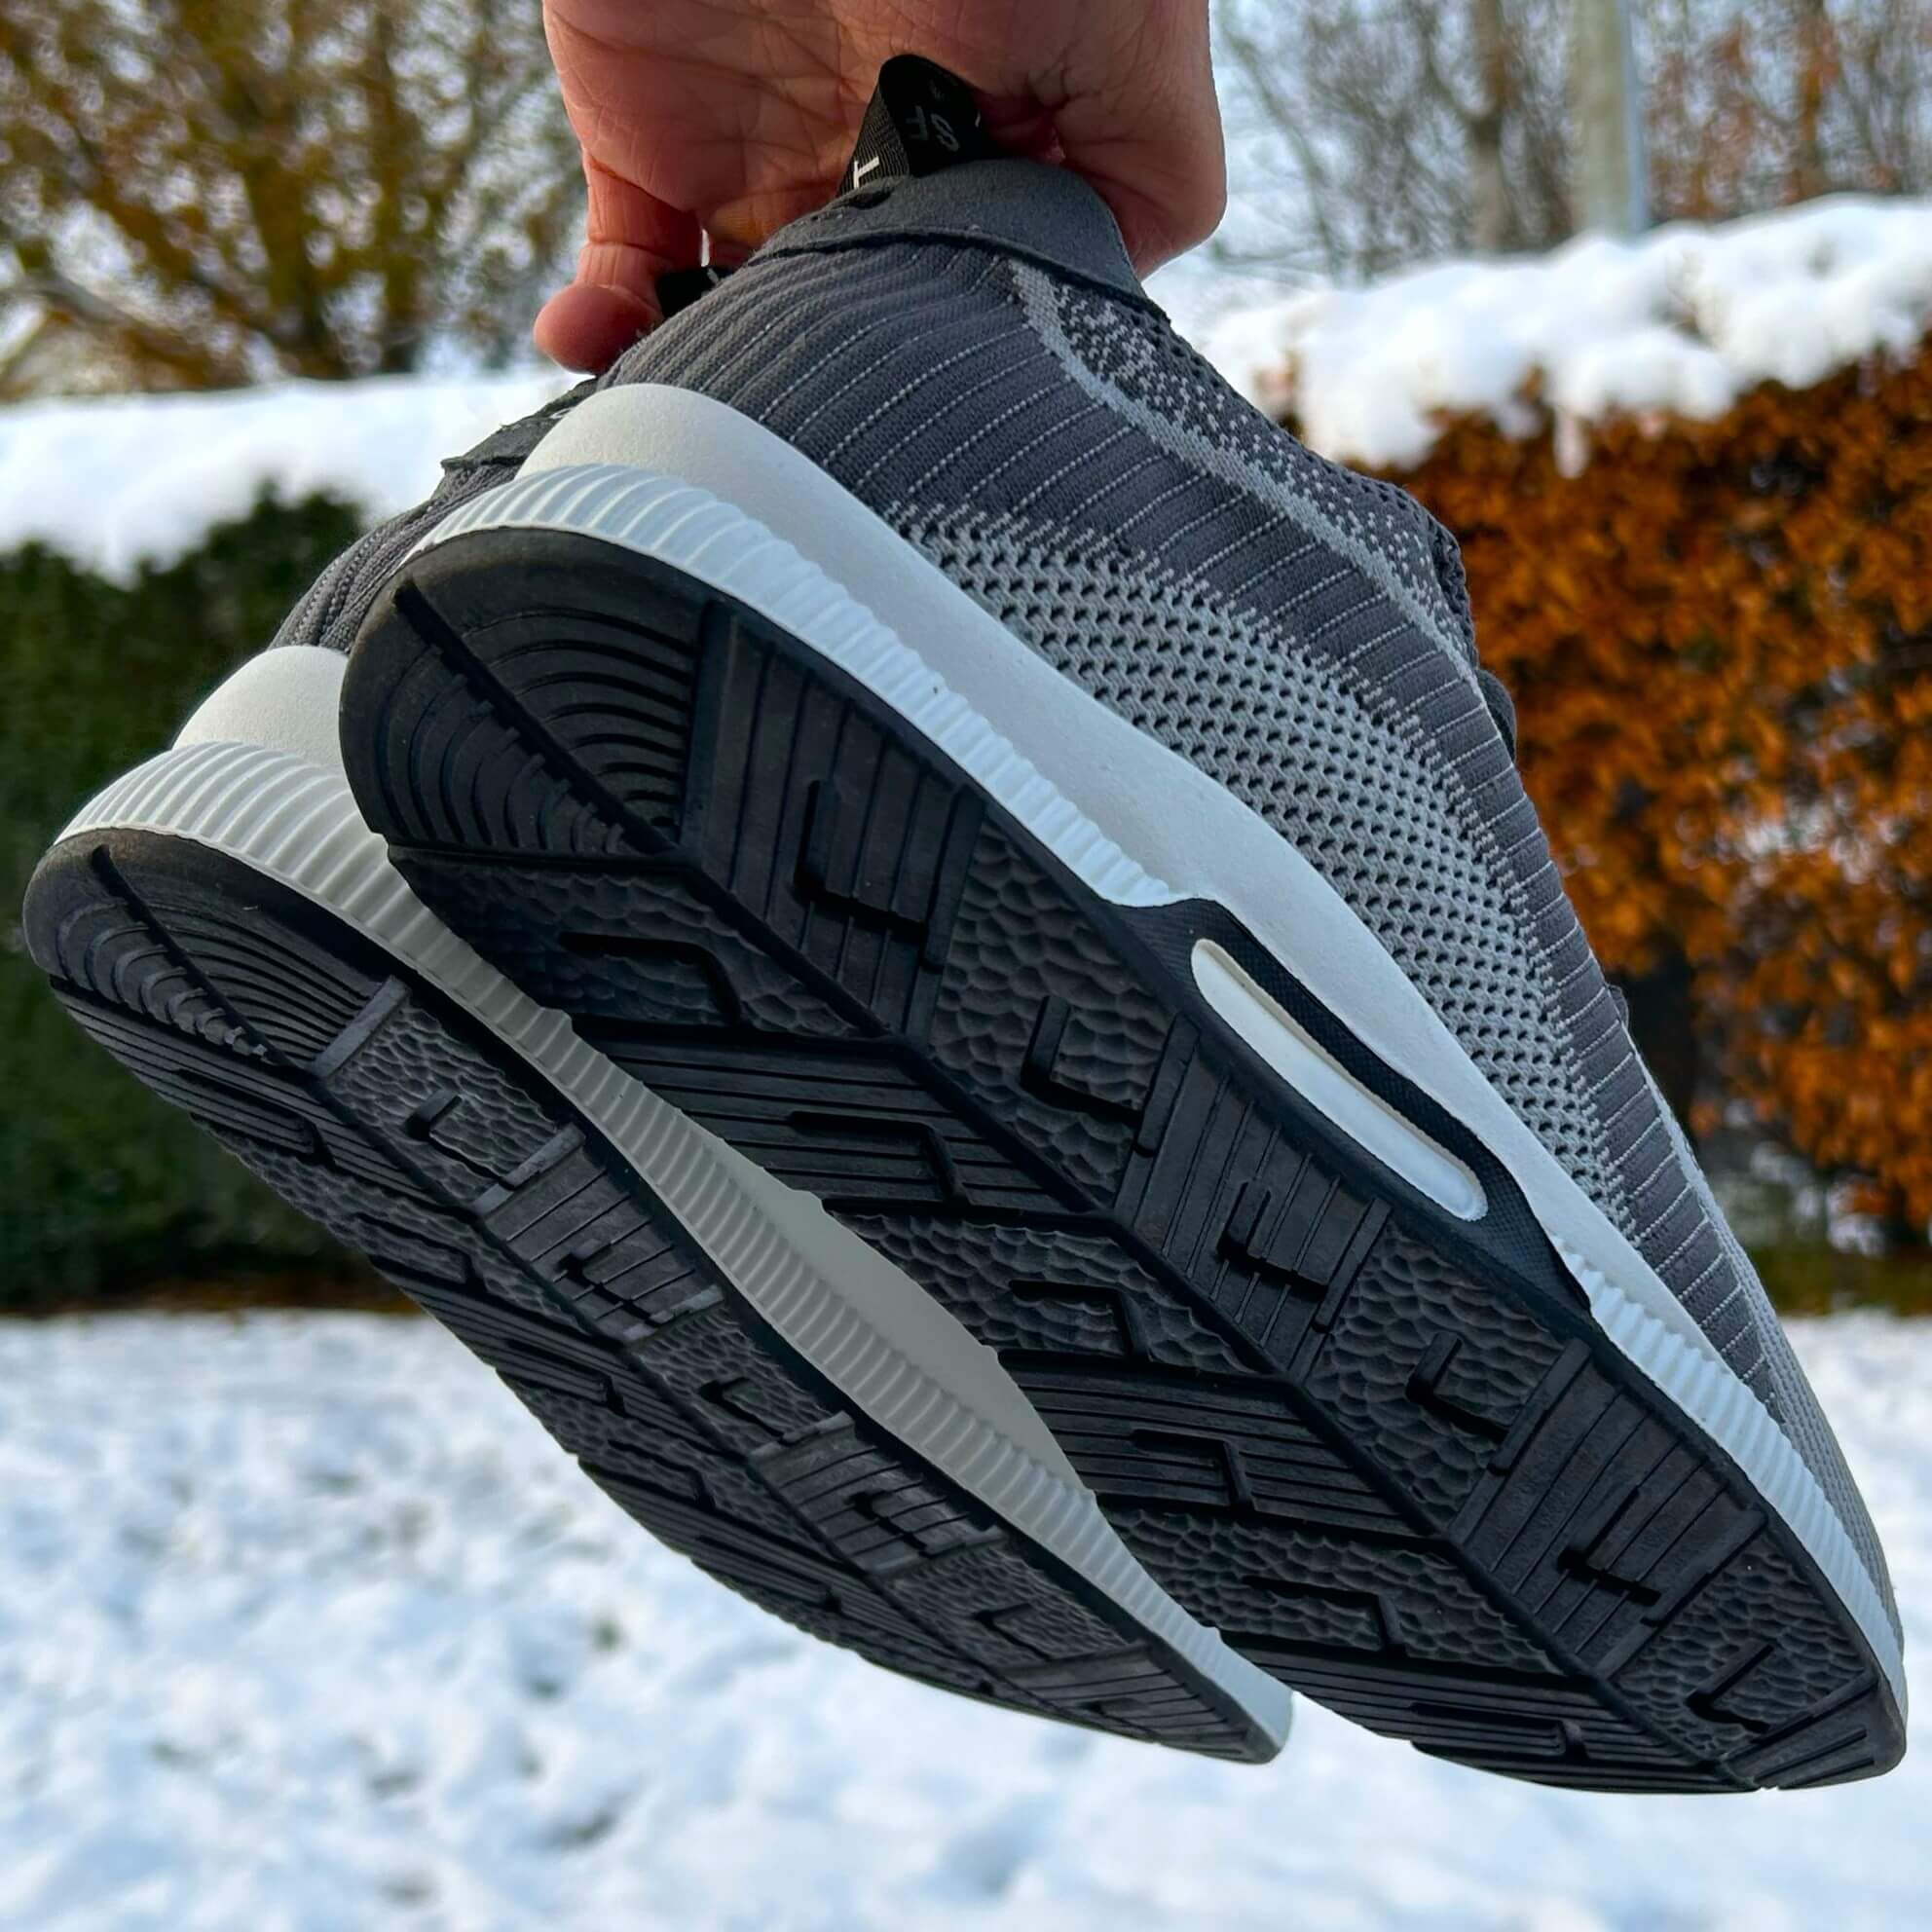 RESTUDSALG Elevate Sneakers (6 CM BOOST) - Greys